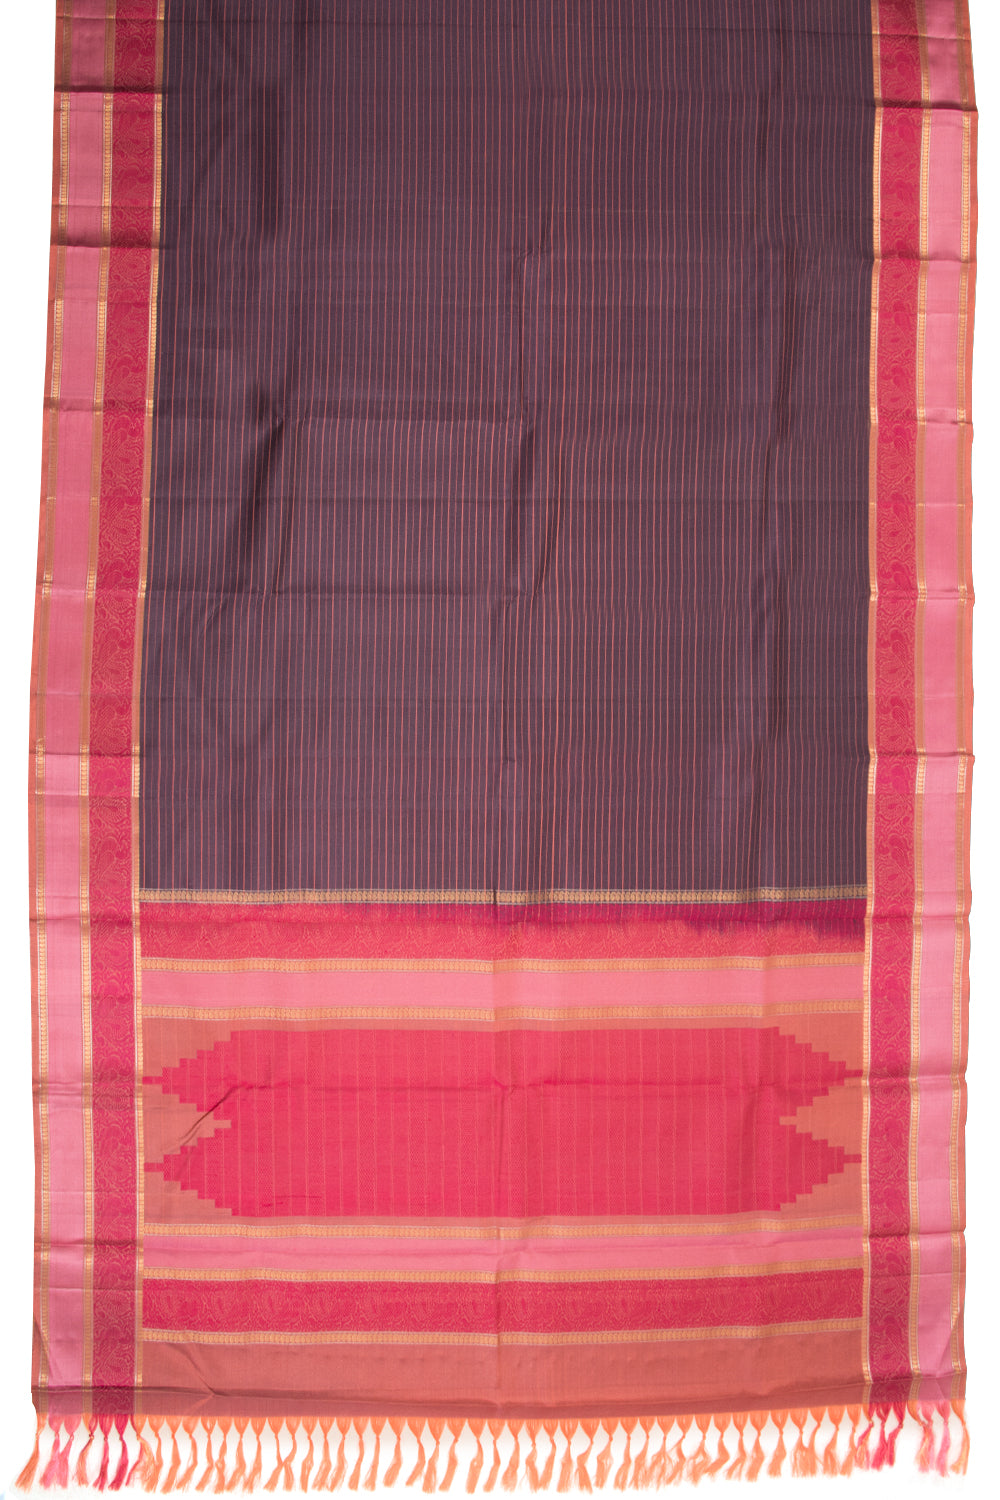 Rasin Purple Thread work Kanjivaram Silk Saree-Avishya